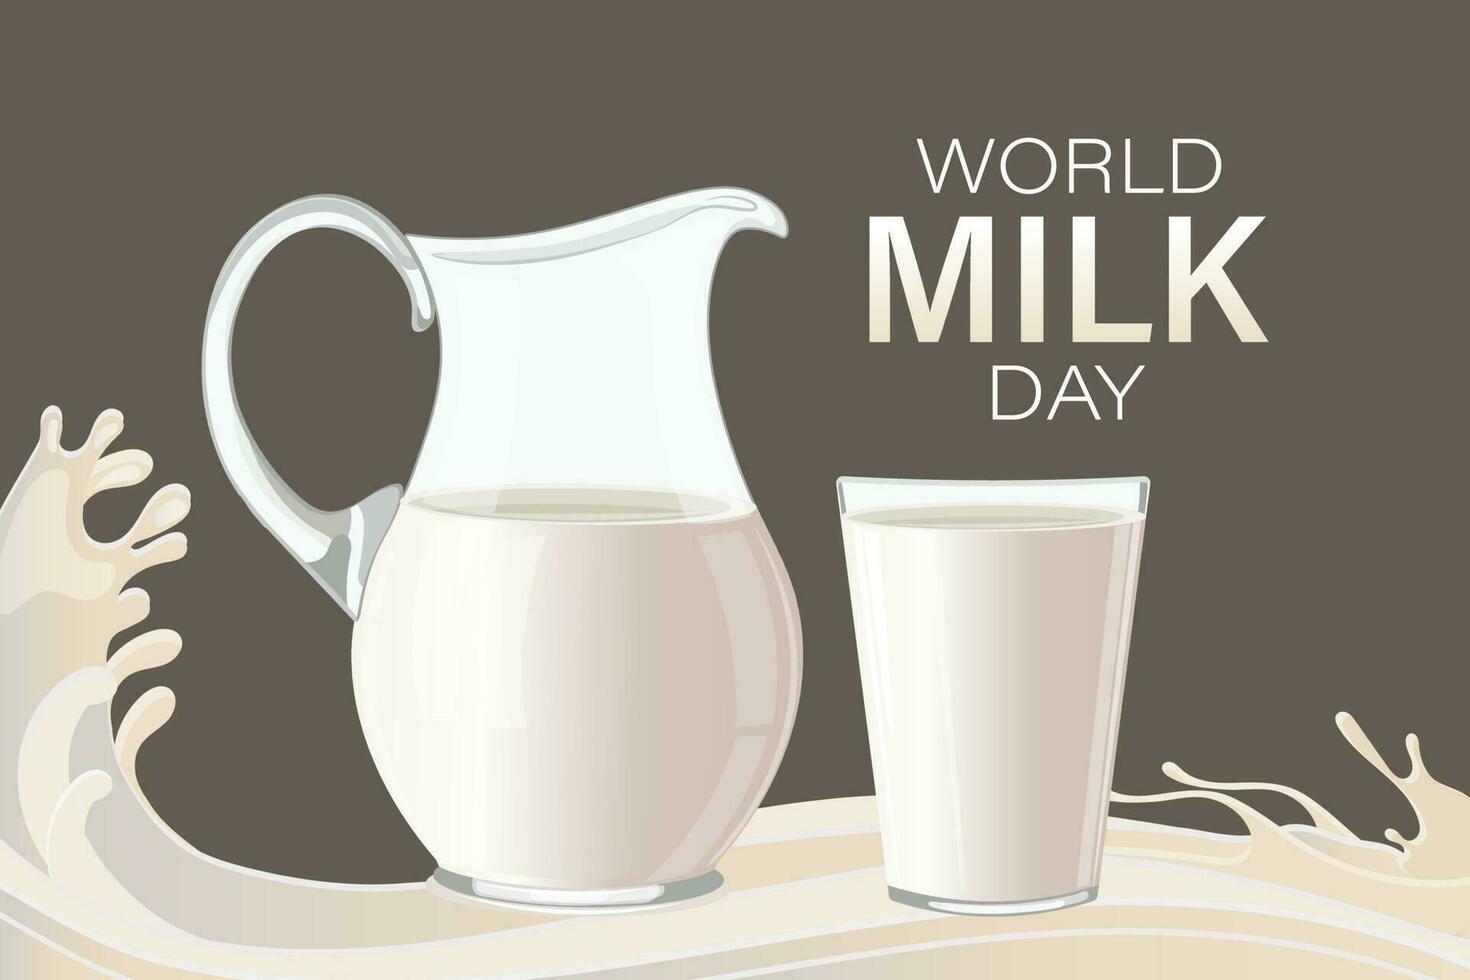 affisch för värld mjölk dag med kanna och glas av mjölk på brun bakgrund. baner, vektor